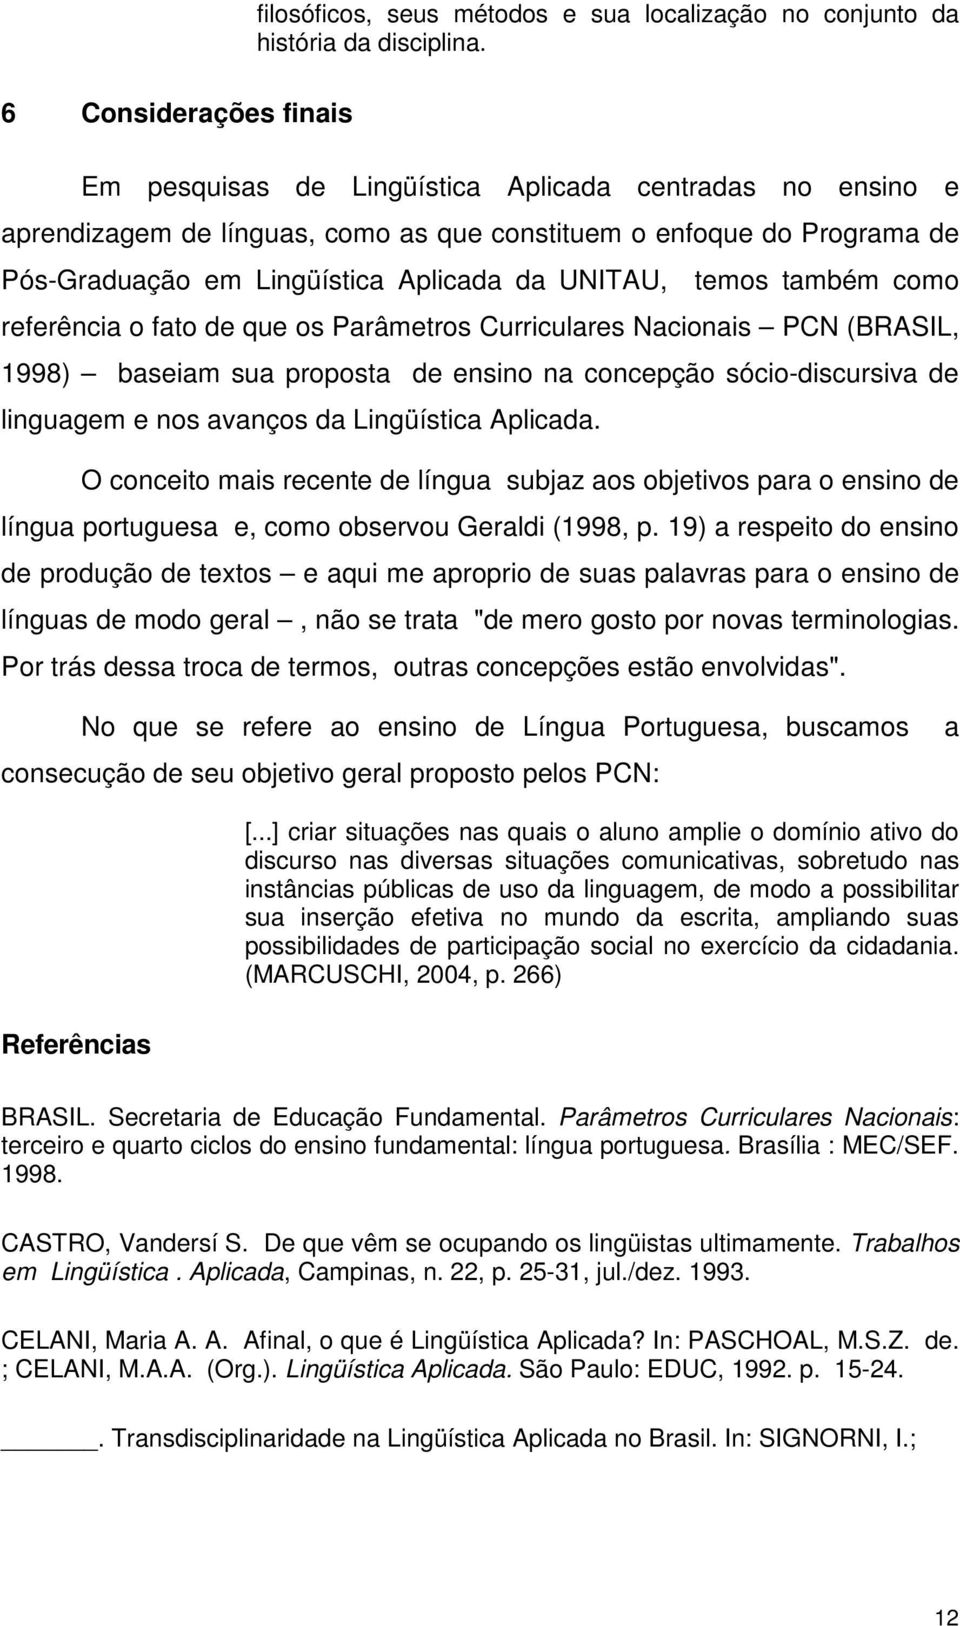 UNITAU, temos também como referência o fato de que os Parâmetros Curriculares Nacionais PCN (BRASIL, 1998) baseiam sua proposta de ensino na concepção sócio-discursiva de linguagem e nos avanços da